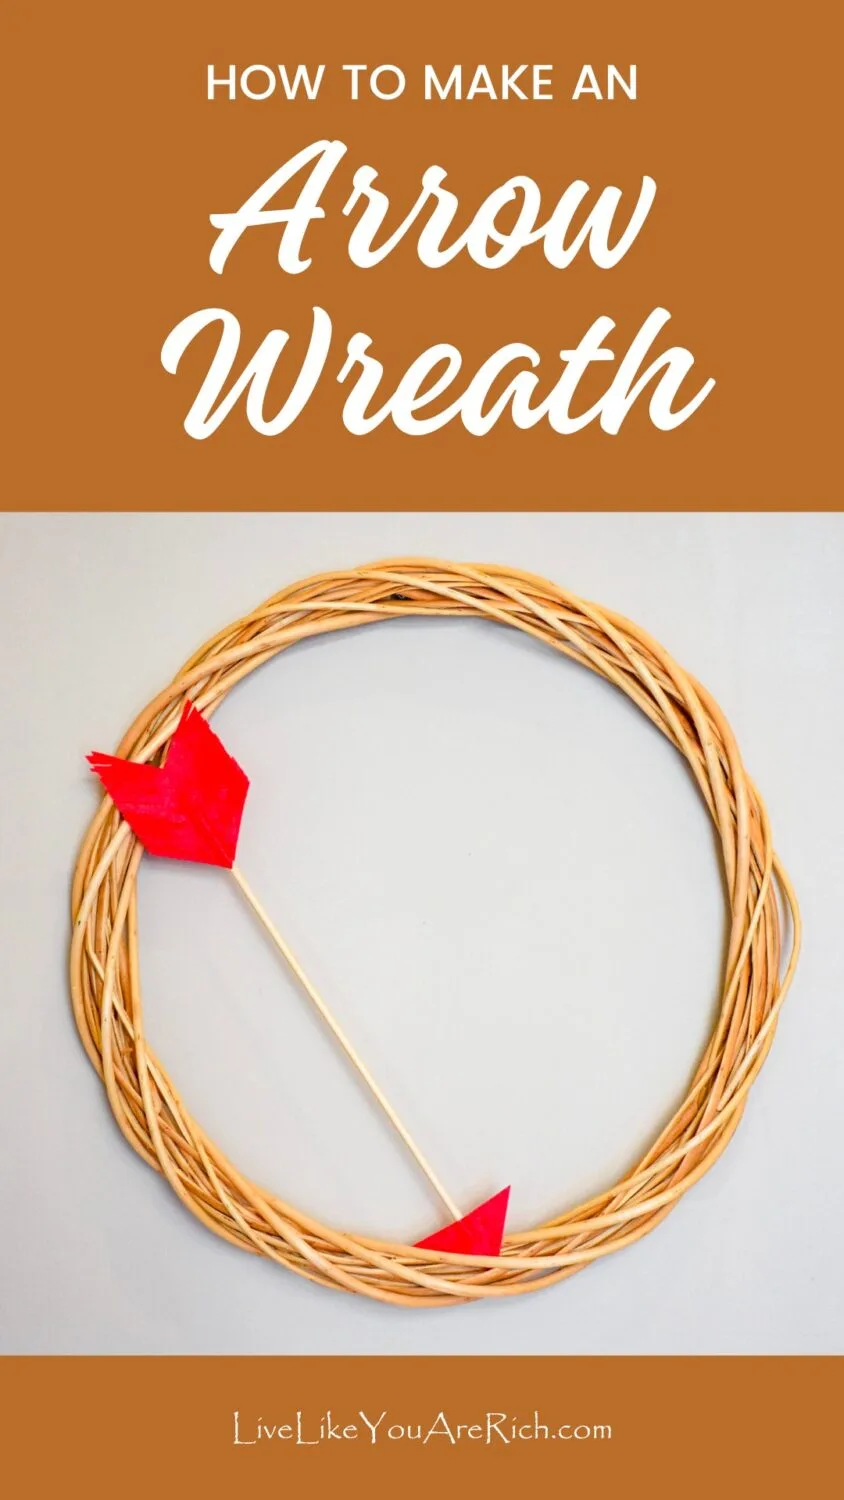 How to Make an Arrow Wreath